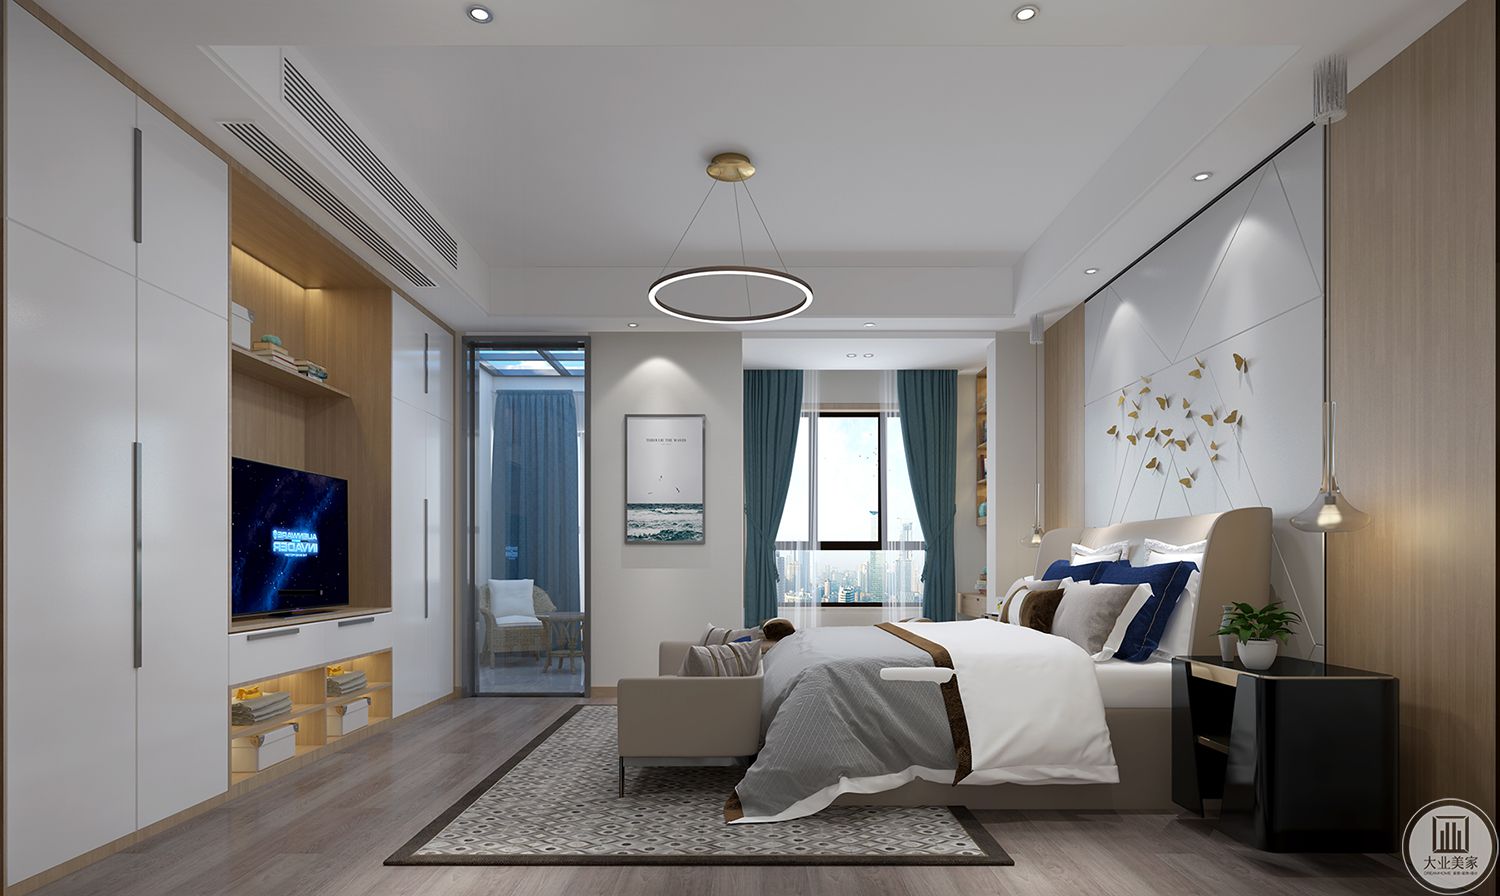 客户习惯那种北欧的清爽，卧室主打清新温馨风格。